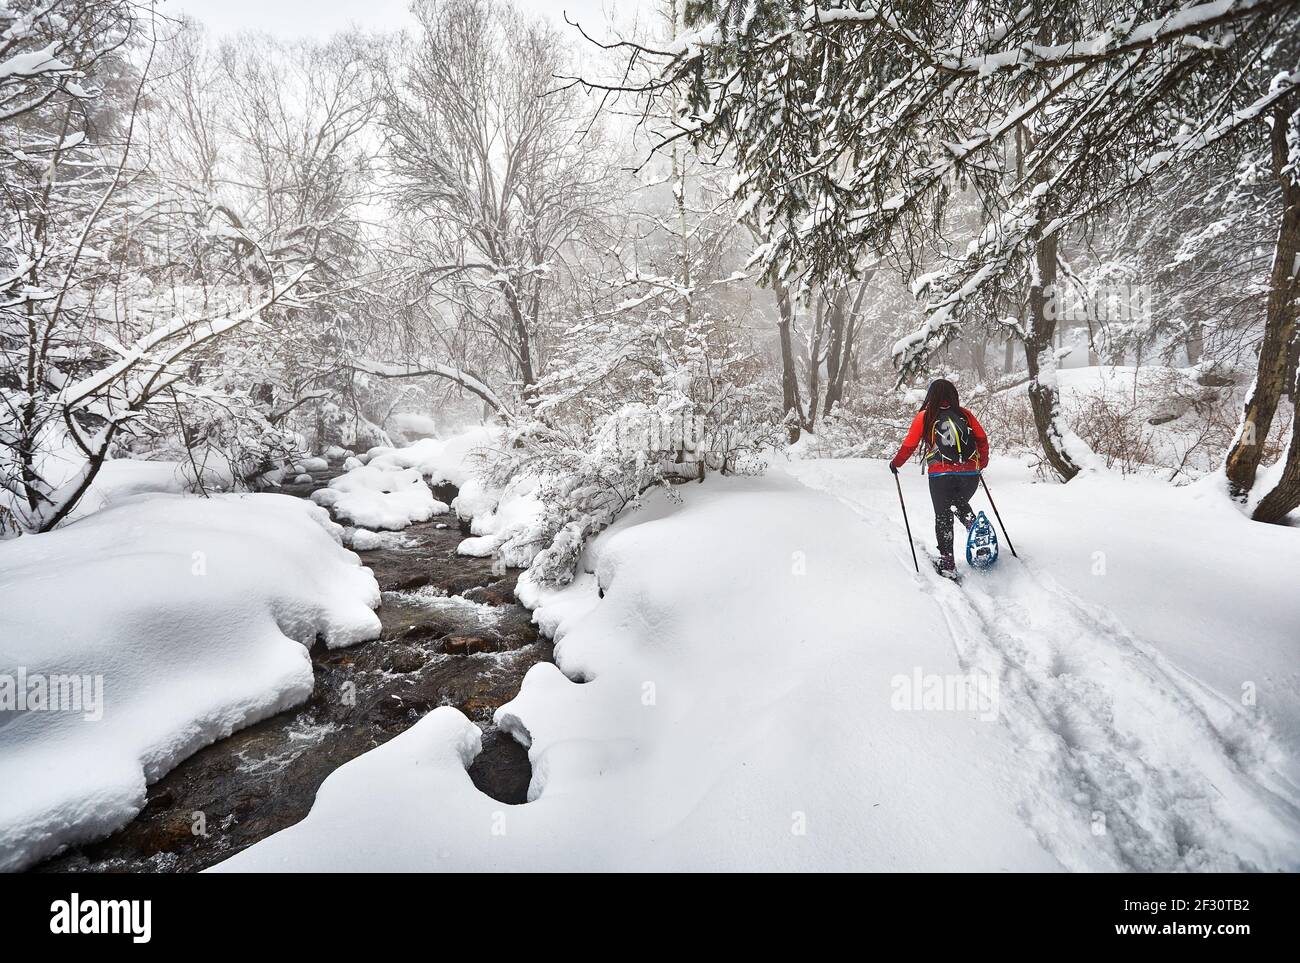 Frau mit Schauschuhen ist im Winter verschneiten Wald in der Nähe des Flusses in Almaty, Kasachstan zu Fuß Stockfoto